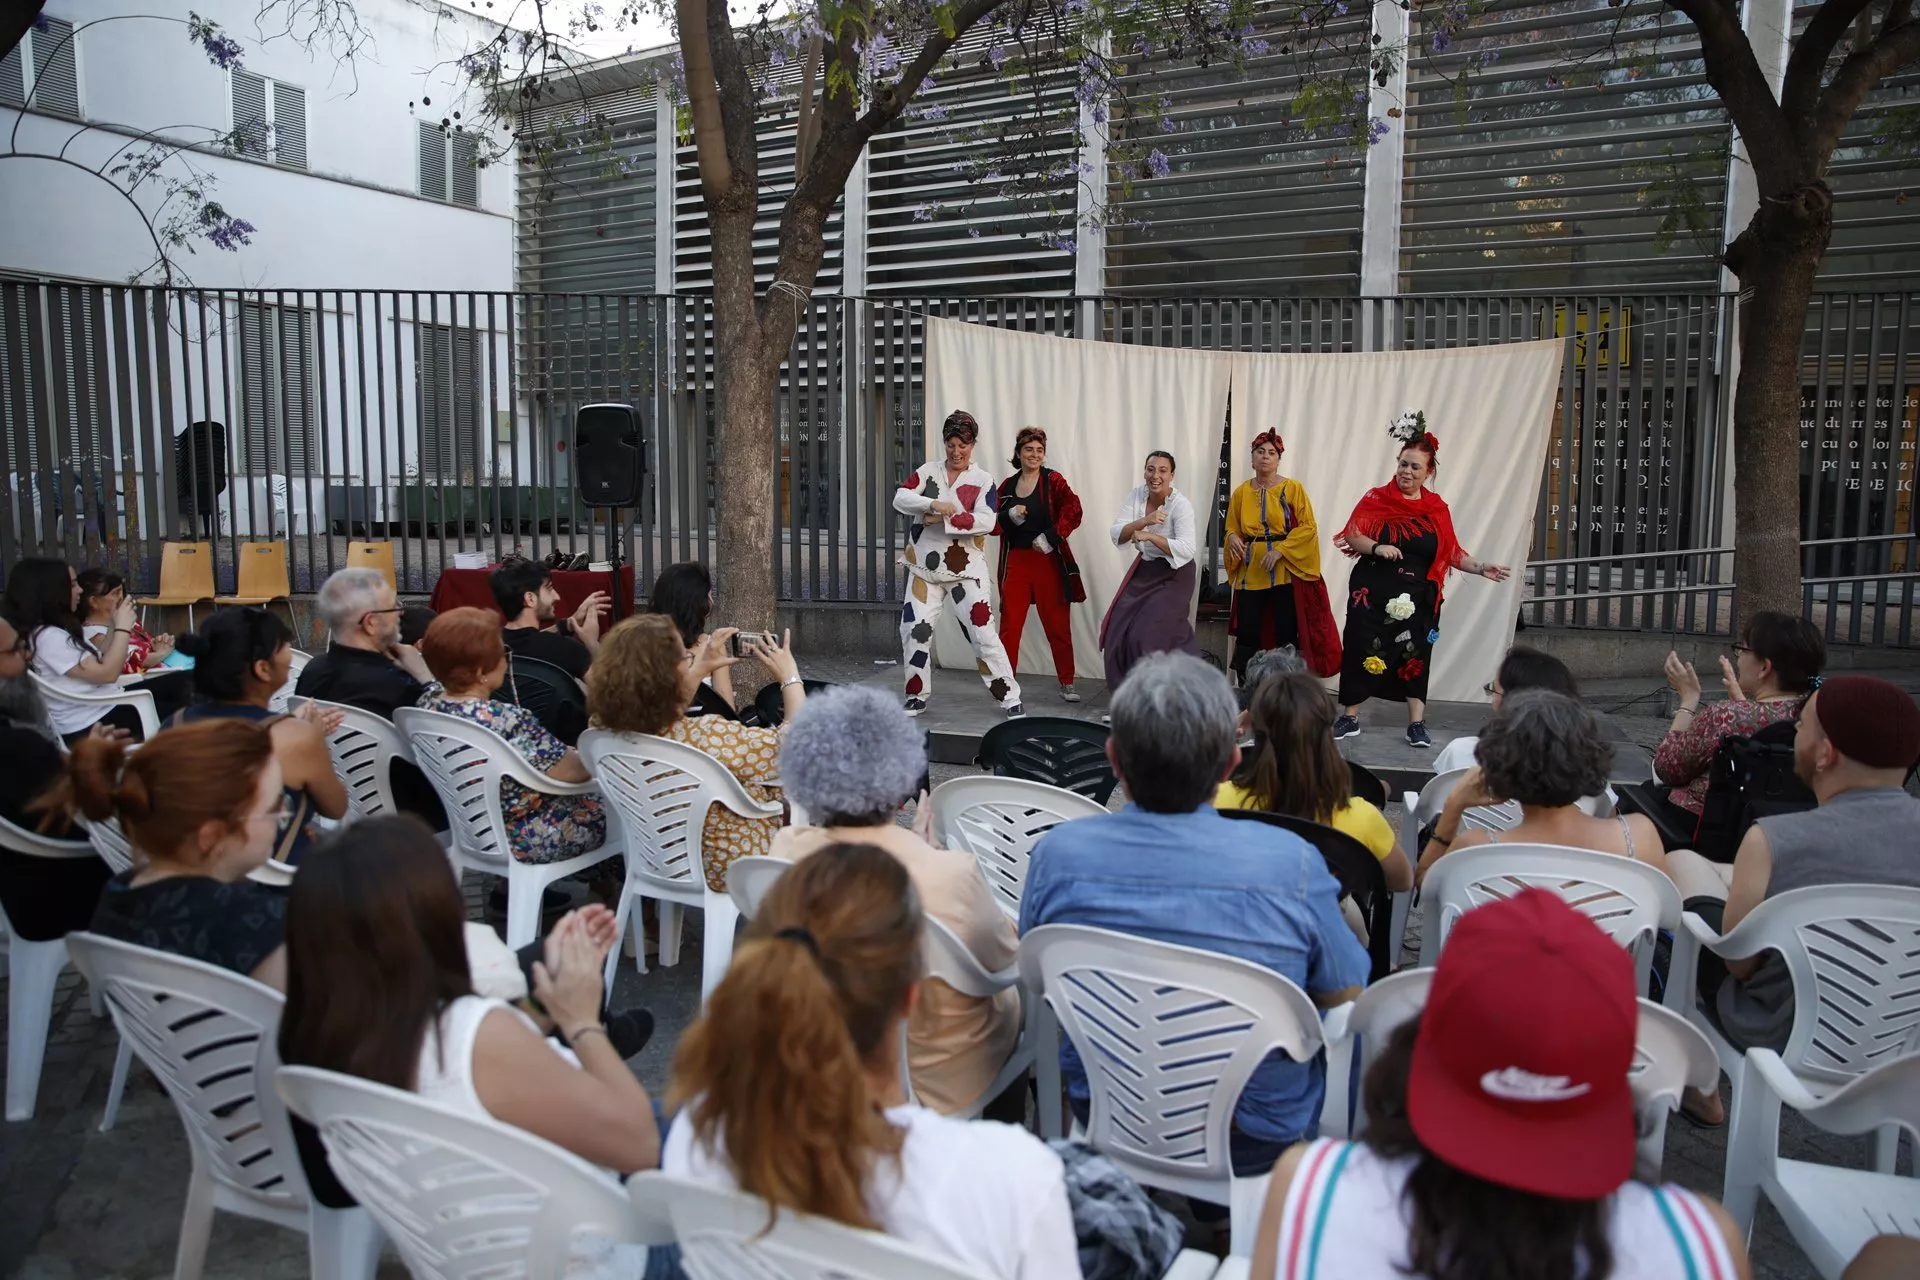 Encuentro Internacional de Commedia dell’Arte “Ciudad de Lucena”. Representación teatral de Canovaccio El Robo, por Alumnas Irene Salas (Teatro del Lazzi)